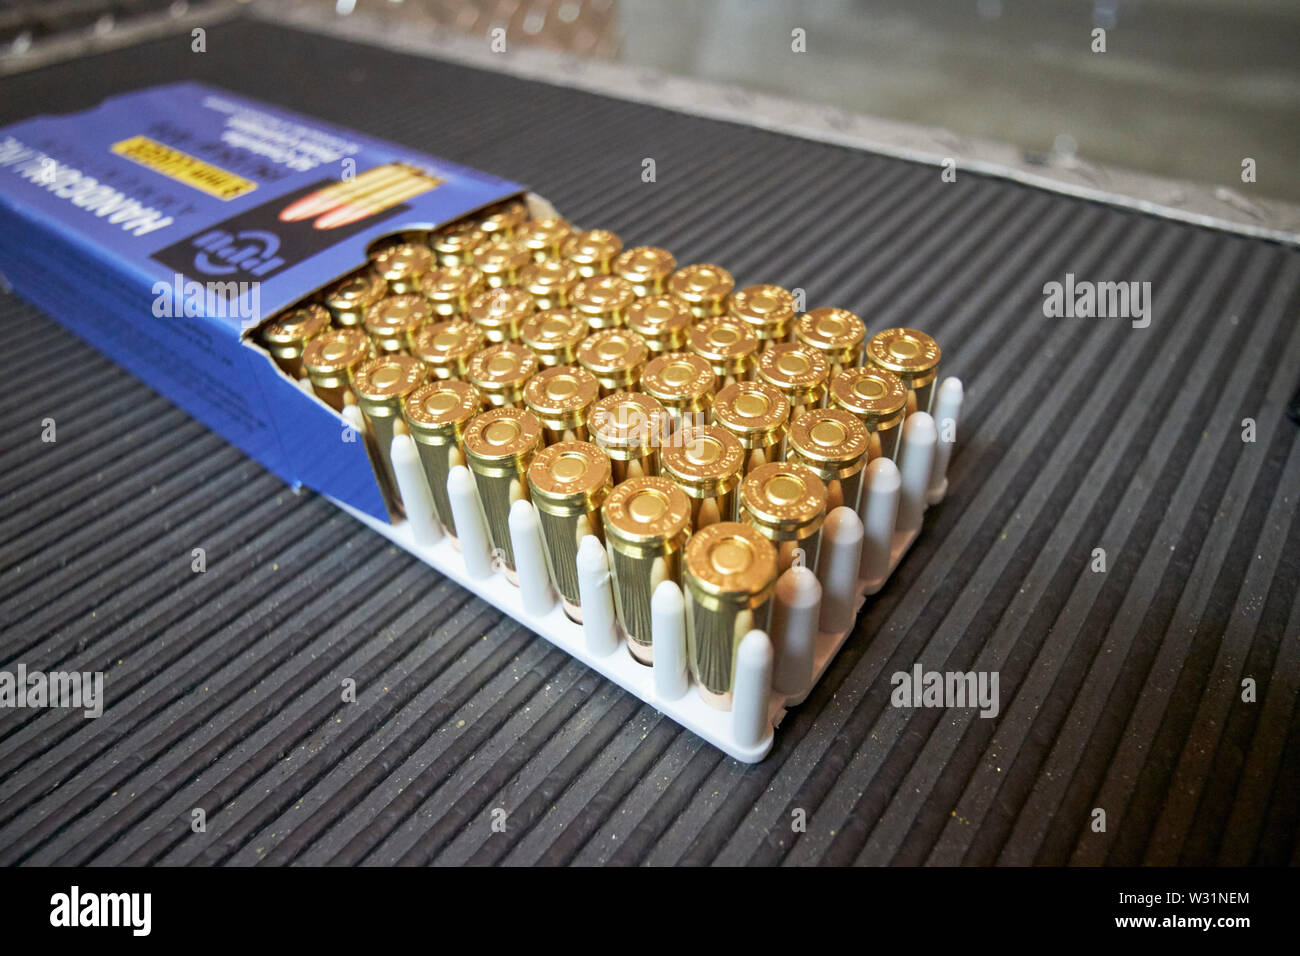 Cuadro completo de 9mm Luger llena chaqueta metálica munición de pistola pistola en una variedad de ESTADOS UNIDOS Estados Unidos de América Foto de stock